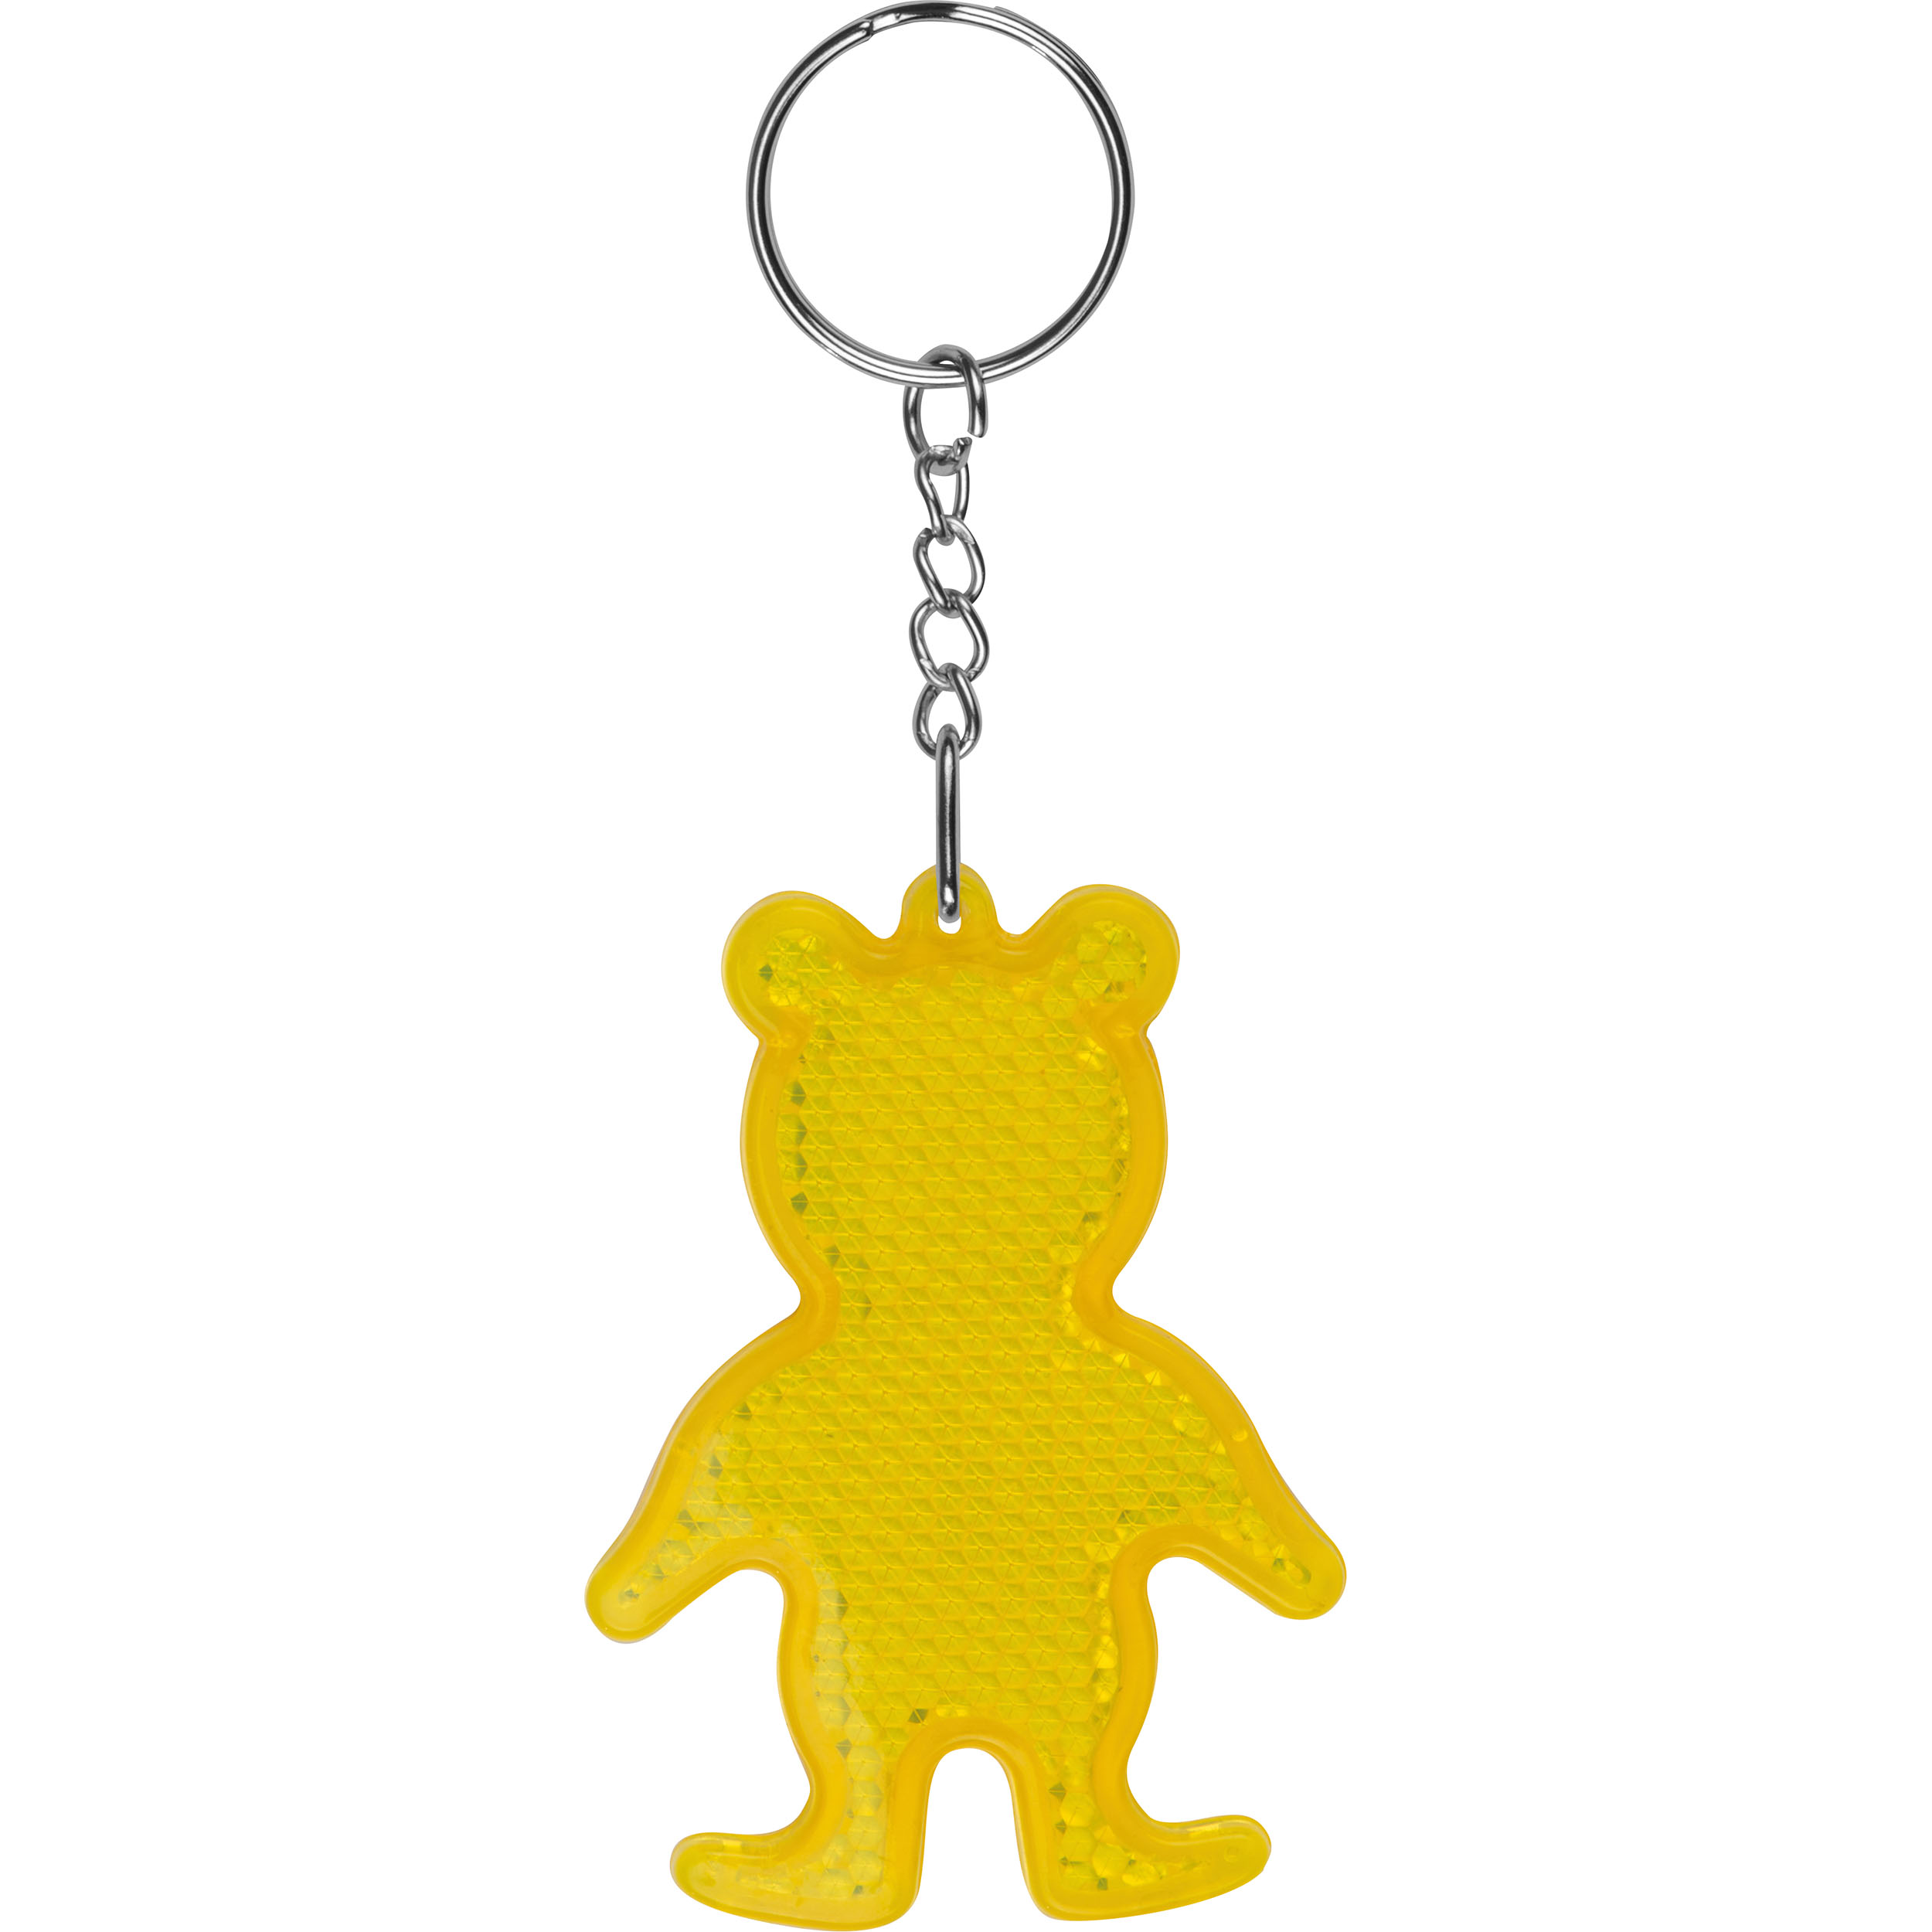 Porte-clés réfléchissant en forme d'ours